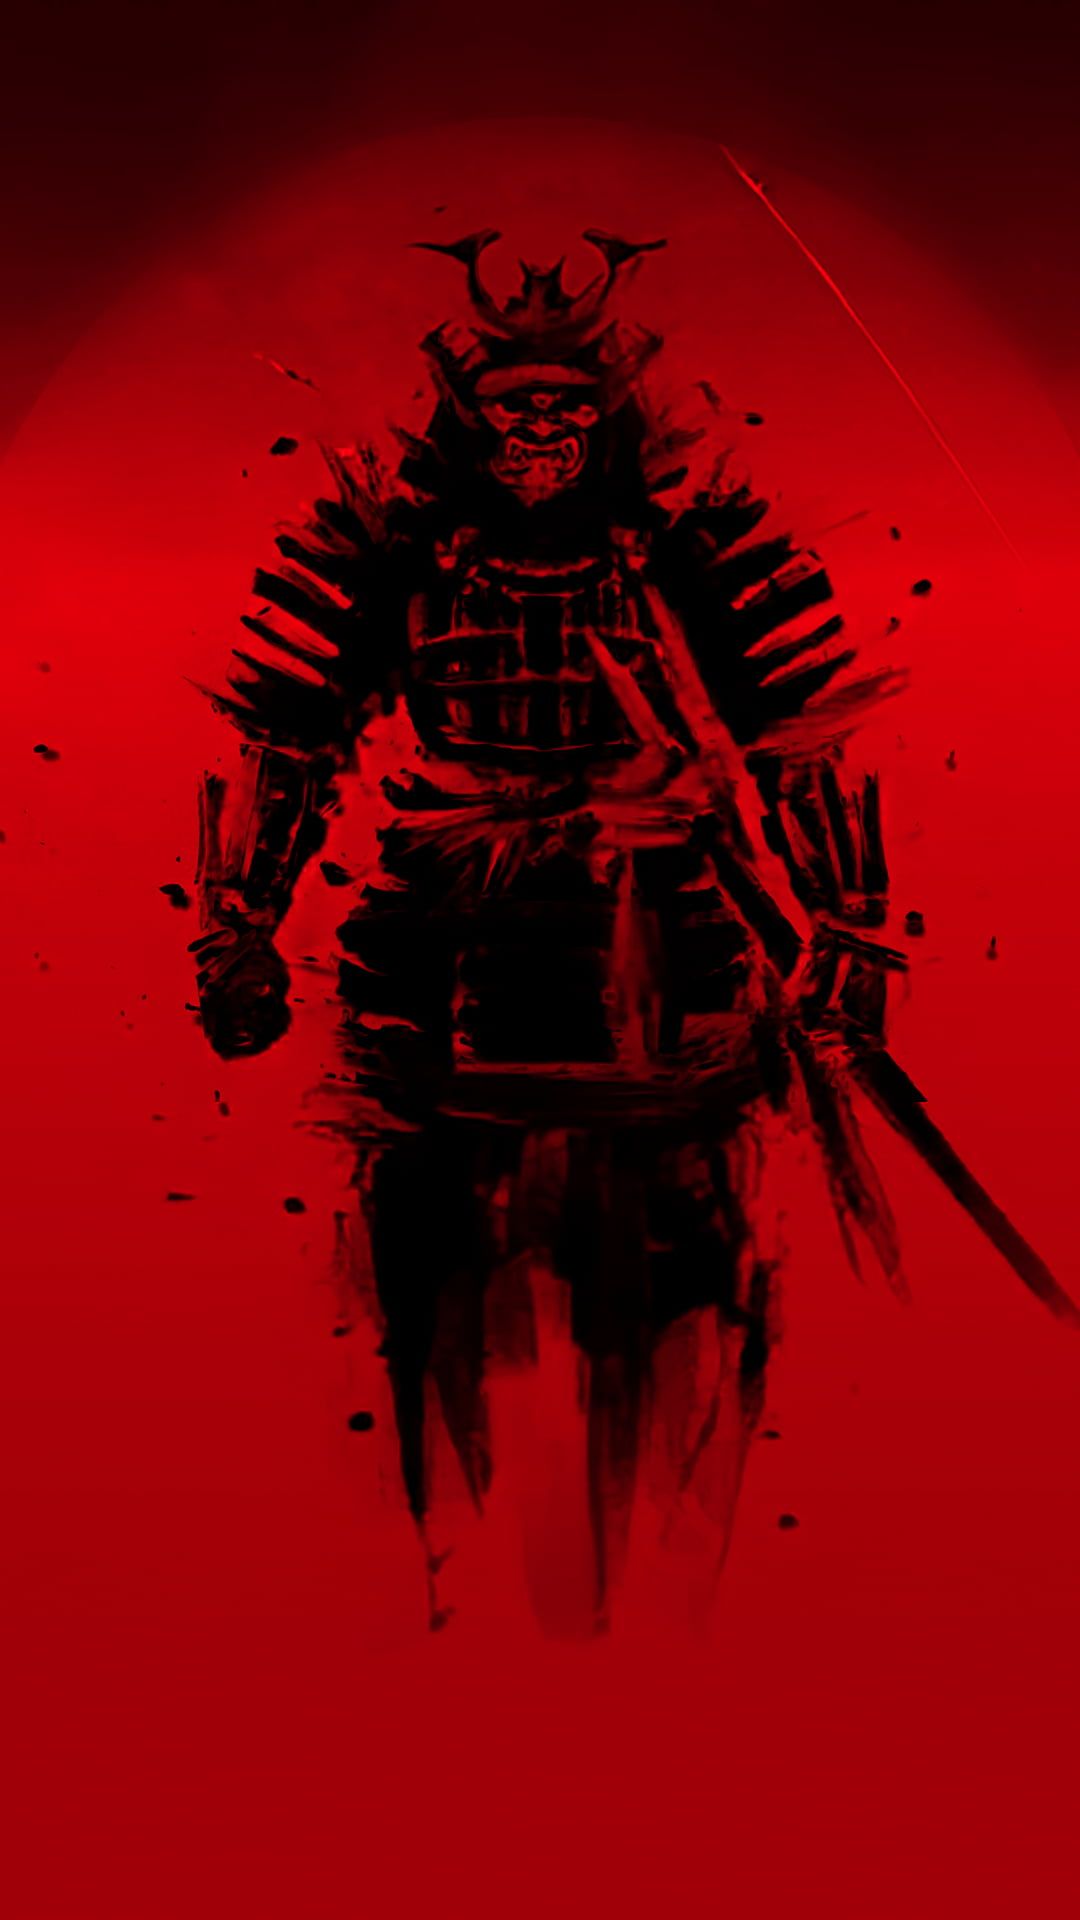 samurai #red #Japan digital art #smartphone P #wallpaper #hdwallpaper #desktop. Samurai wallpaper, Samurai art, Samurai